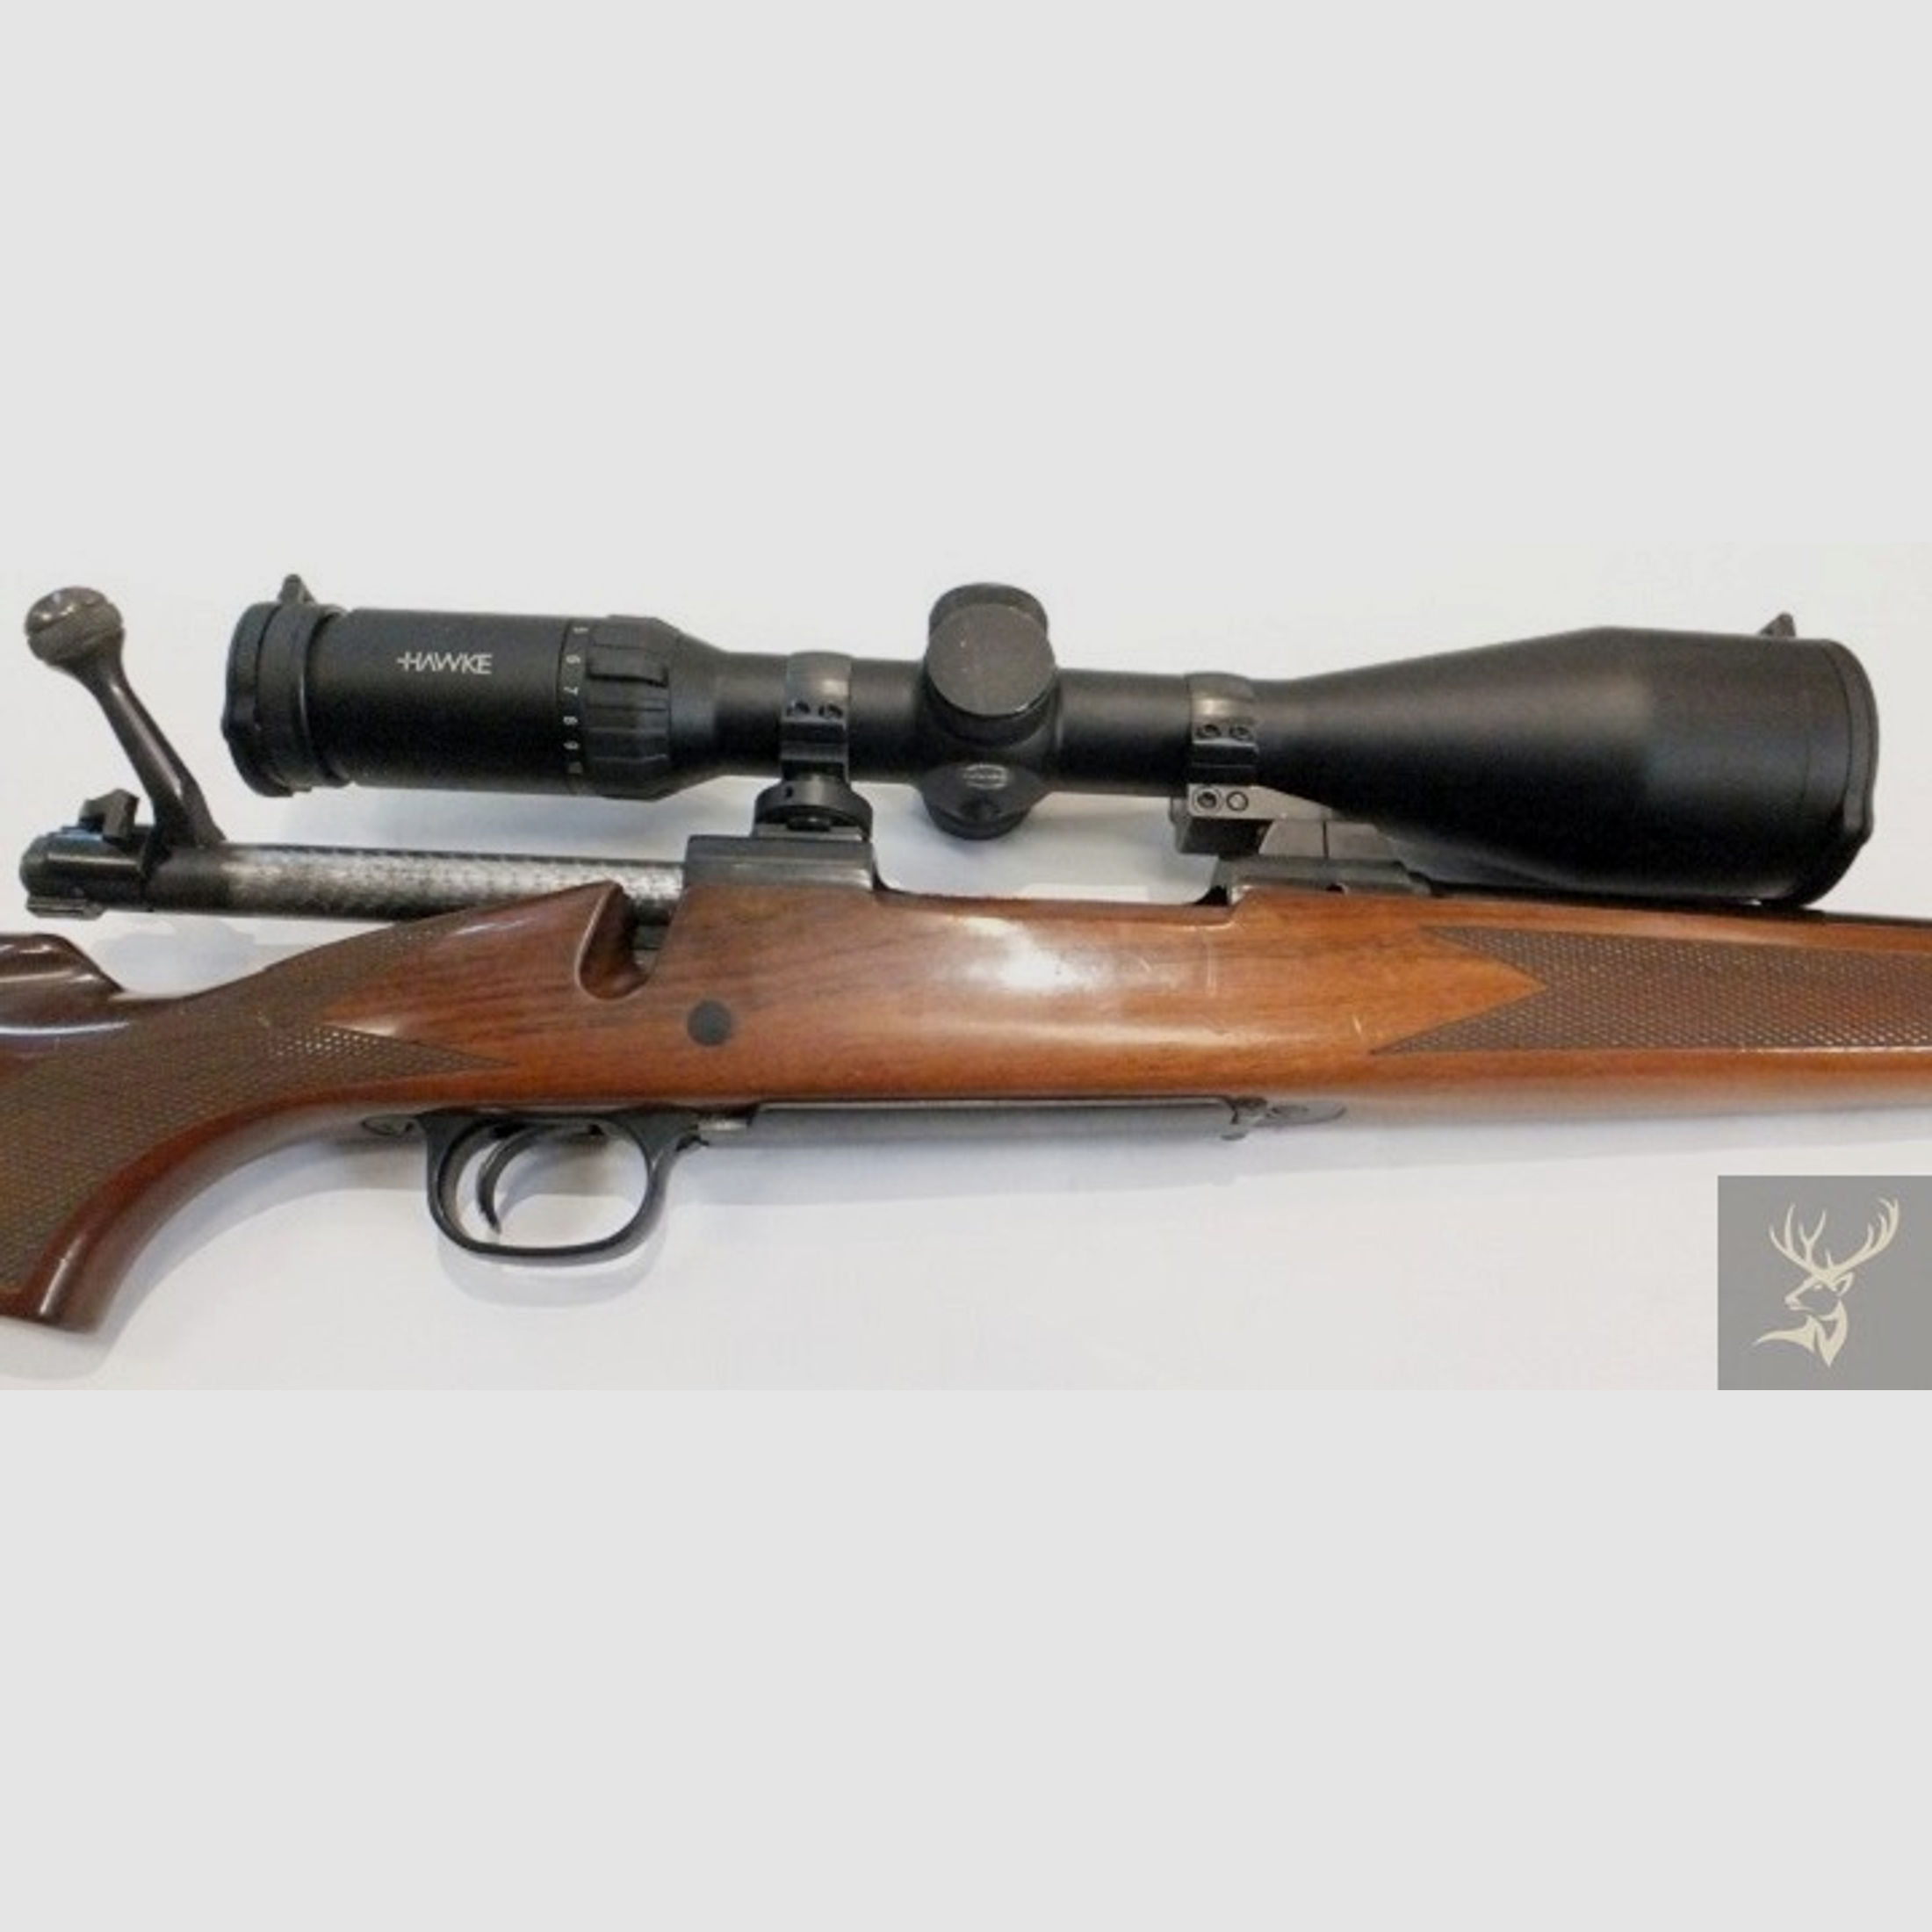 Winchester Gebrauchtwaffe Mod. 70 .30-06Spring